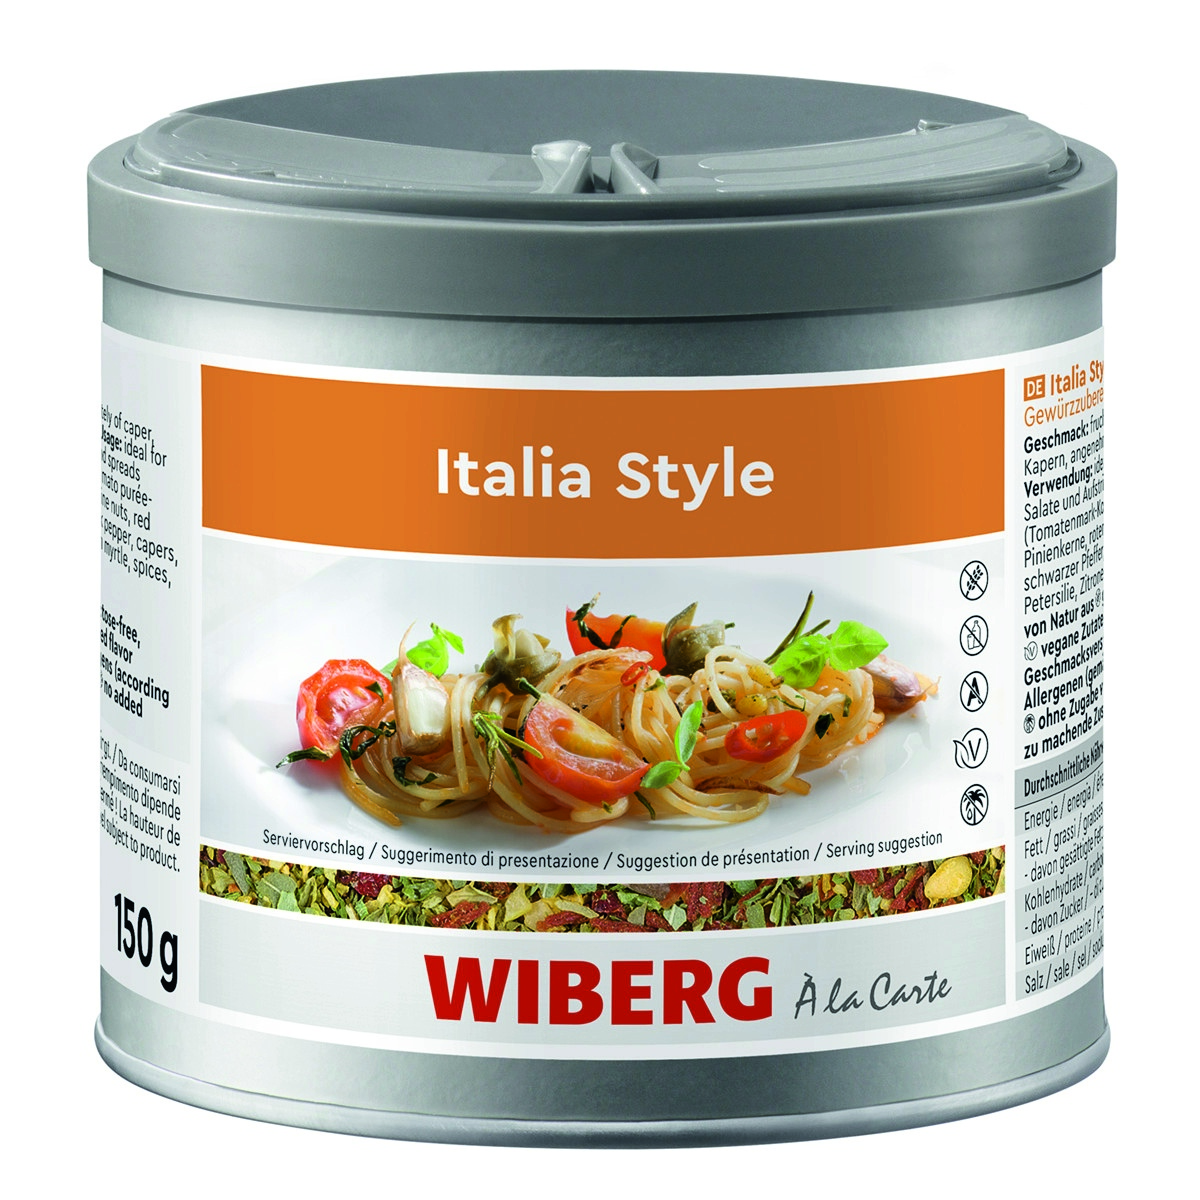 WIBERG Italia Style